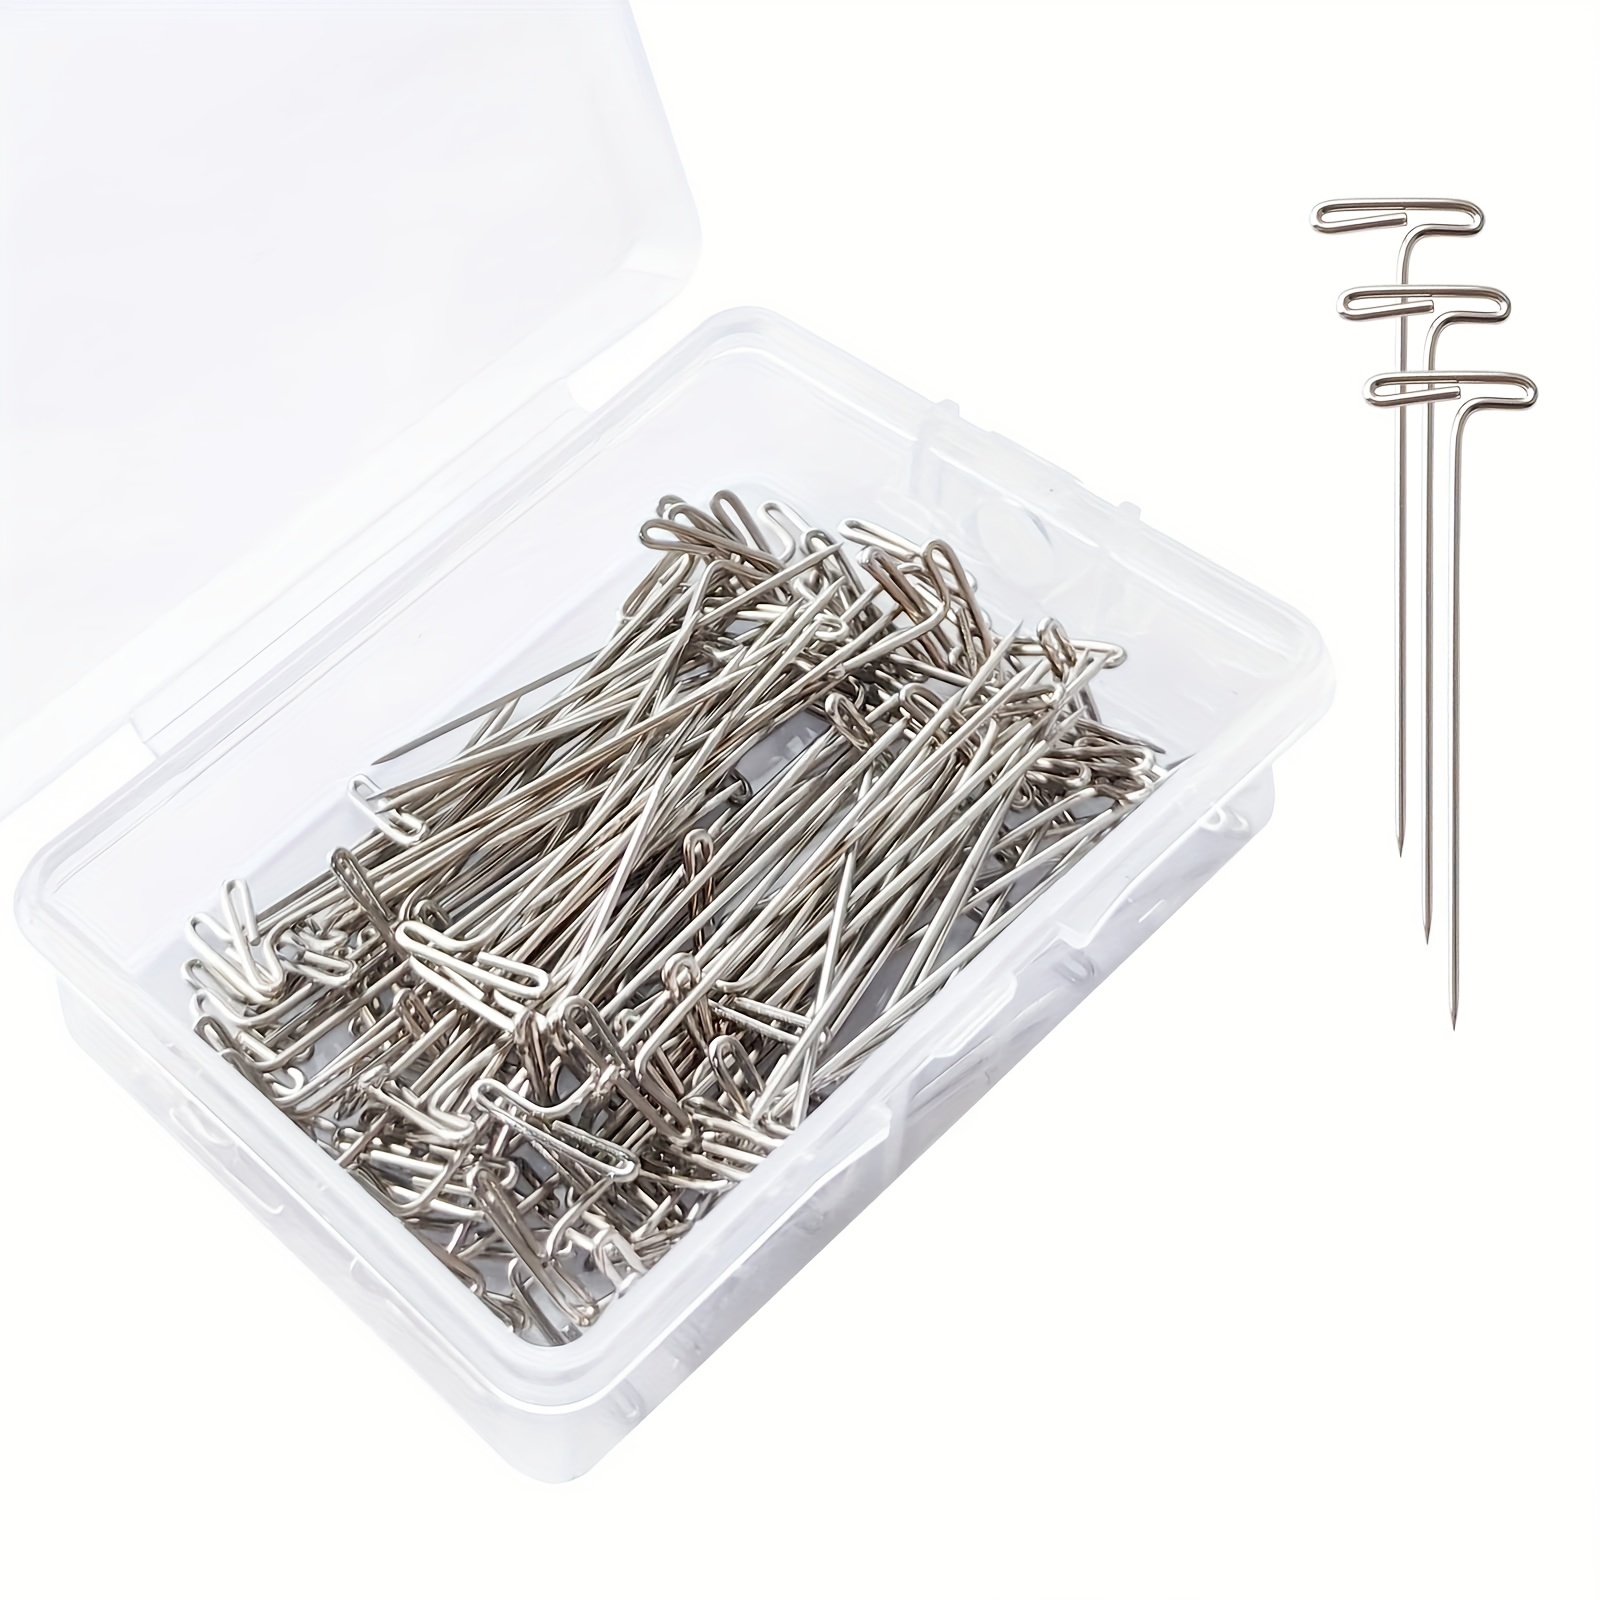 Drema Steel T-Pins for Blocking Knitting,2-Inch T-Pins, 100pcs Box